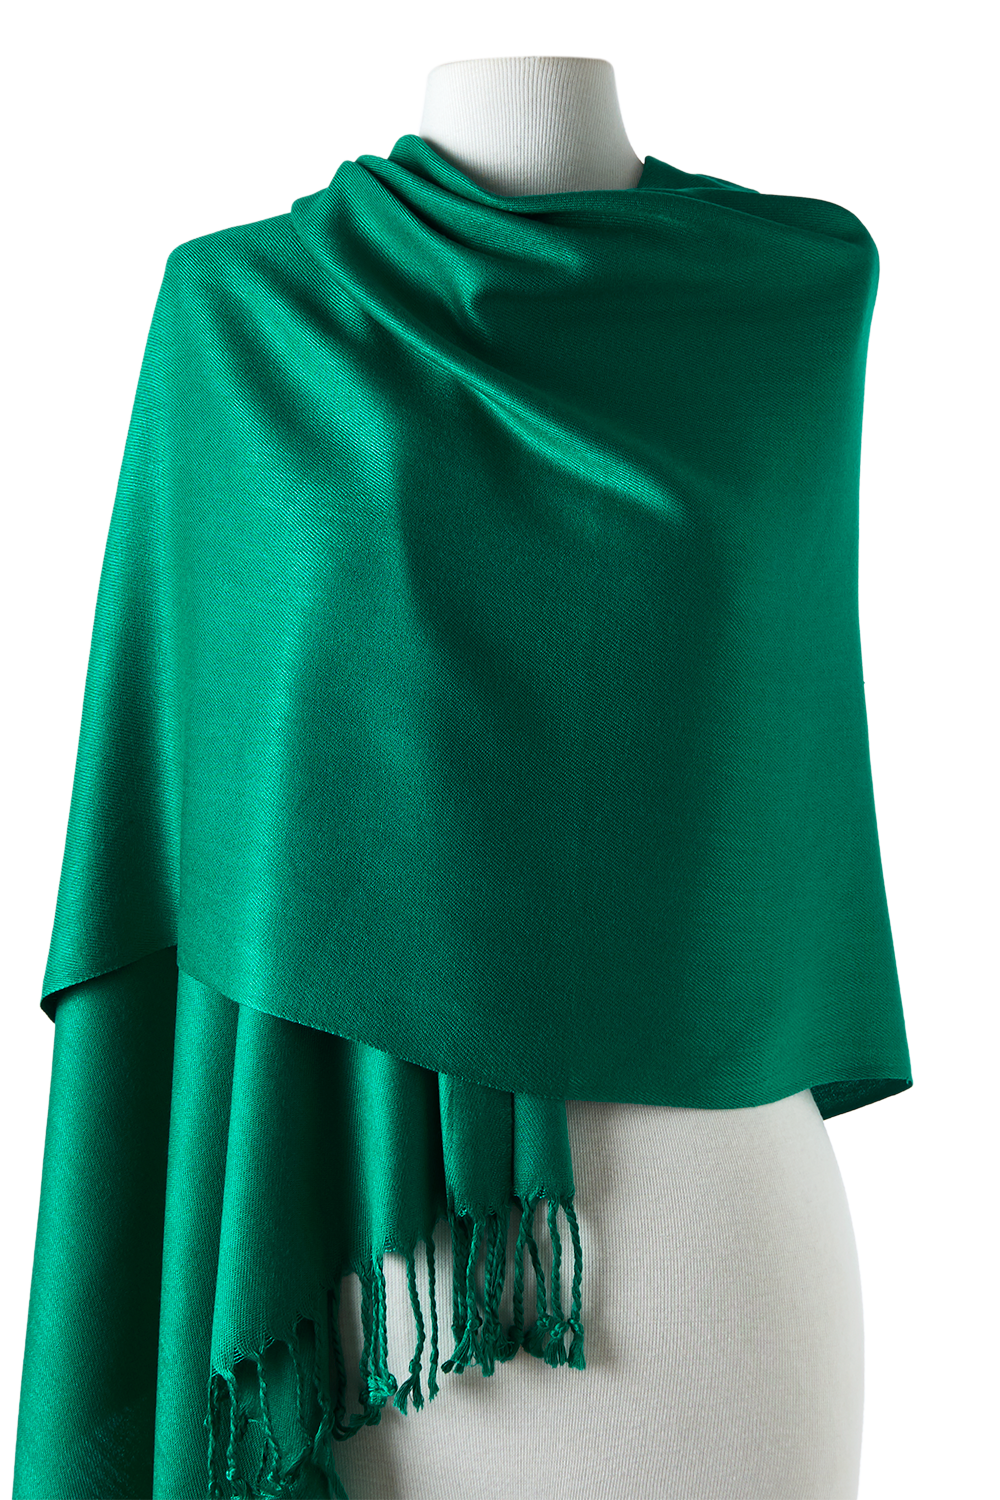 pashmina de viscose verde bandeira 70x180cm para festas, eventos, passeios, frio e inverno